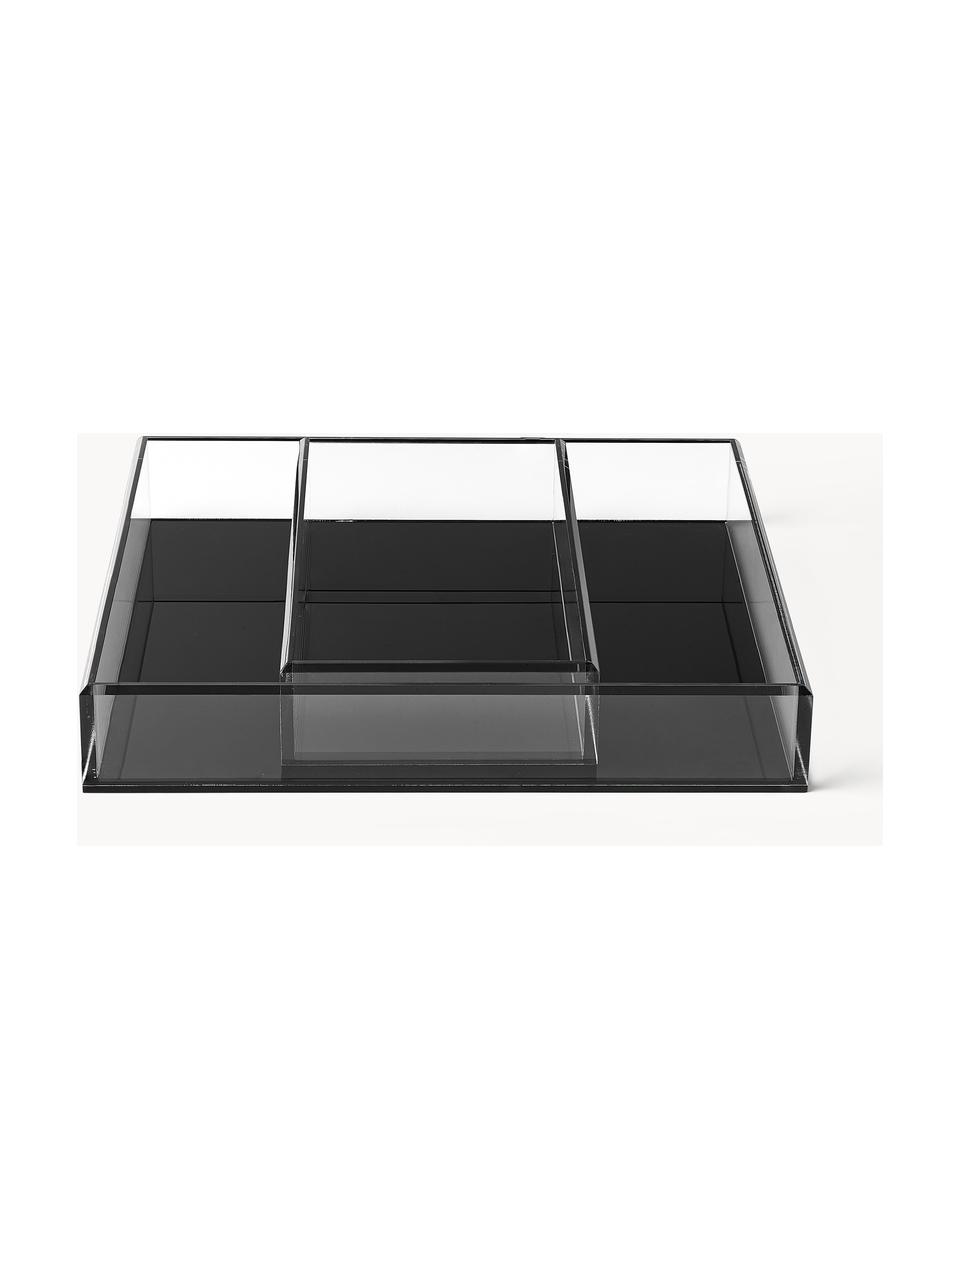 Deko-Tabletts Yuki, 2er-Set, Acrylglas, Schwarz, Set mit verschiedenen Größen